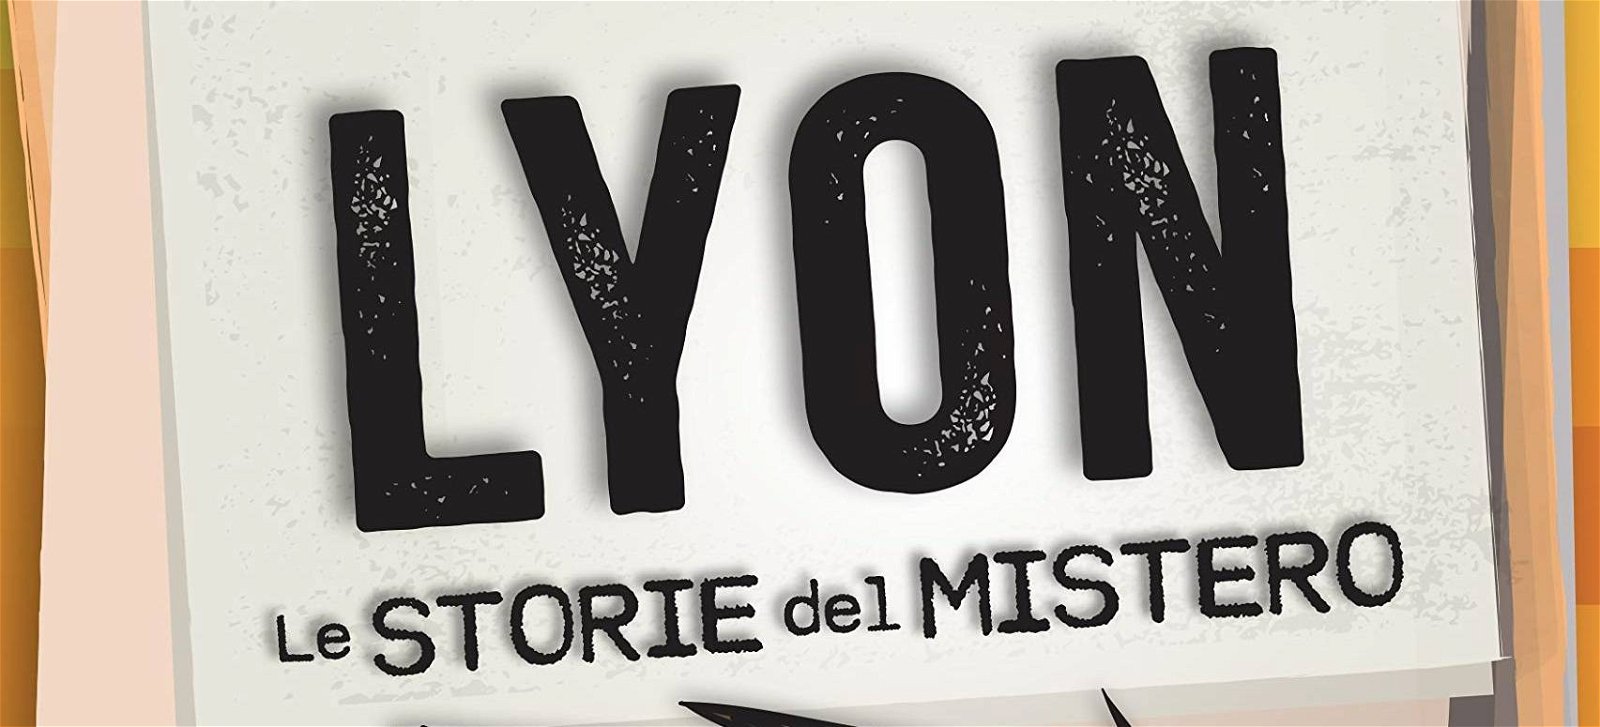 Immagine di Le storie del mistero: il libro di LyonGamer domina la classifica bestseller di Amazon